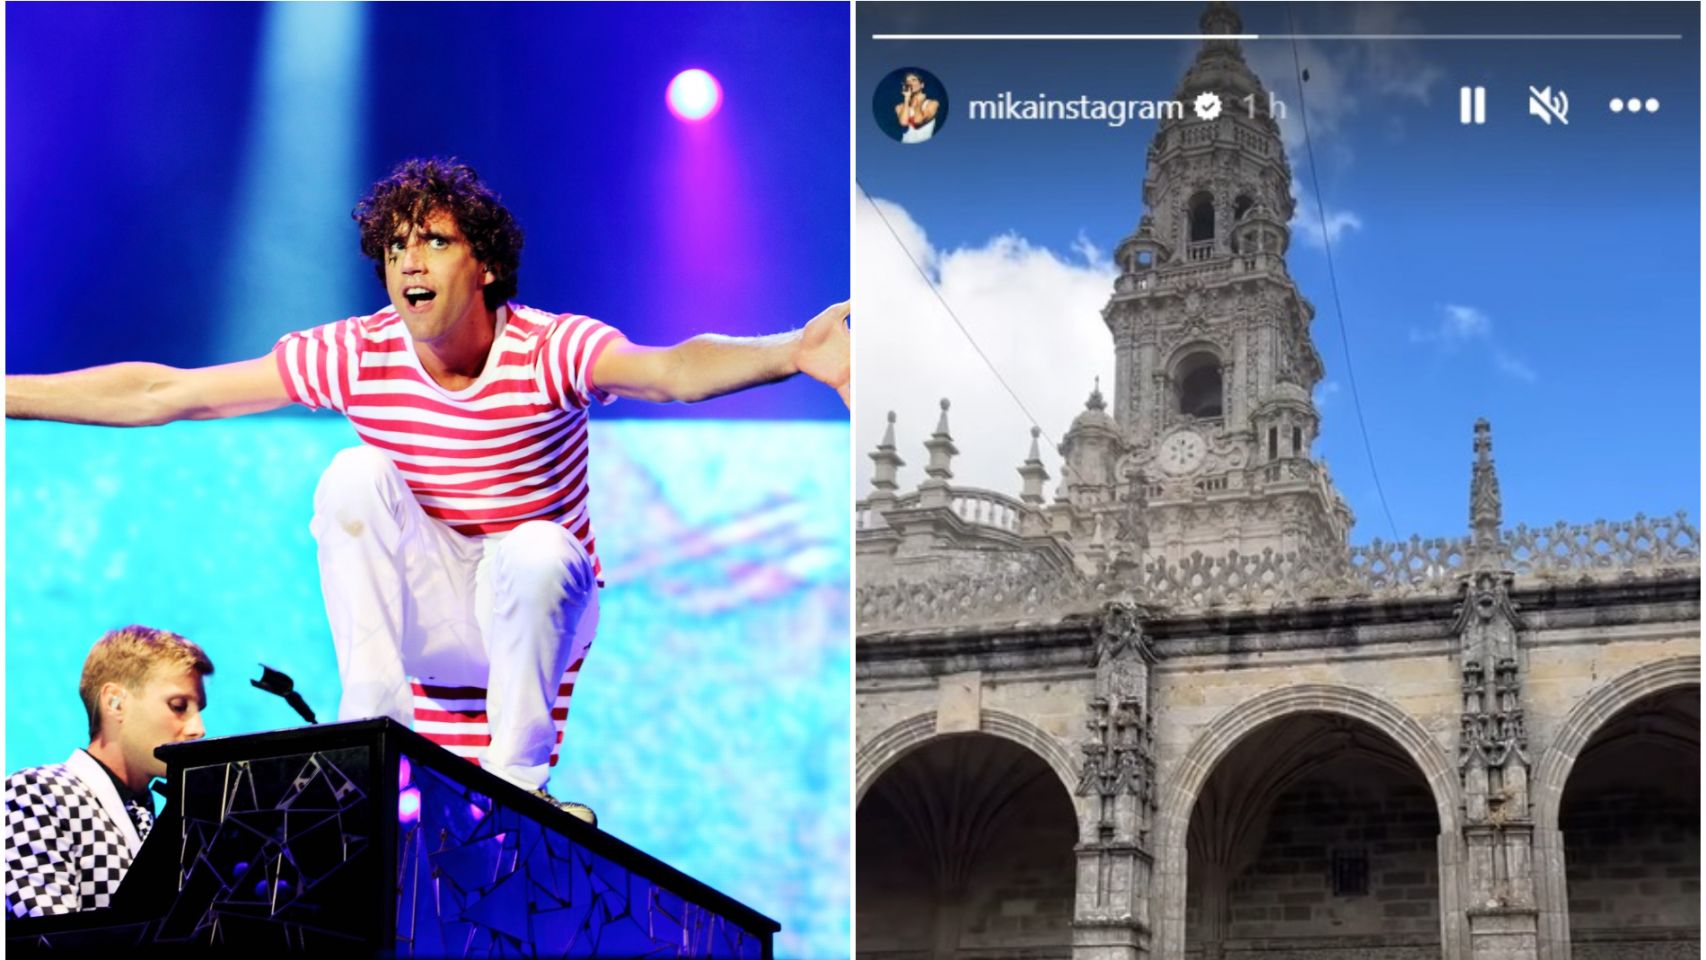 Mika y la storie de Instagram que ha subido 